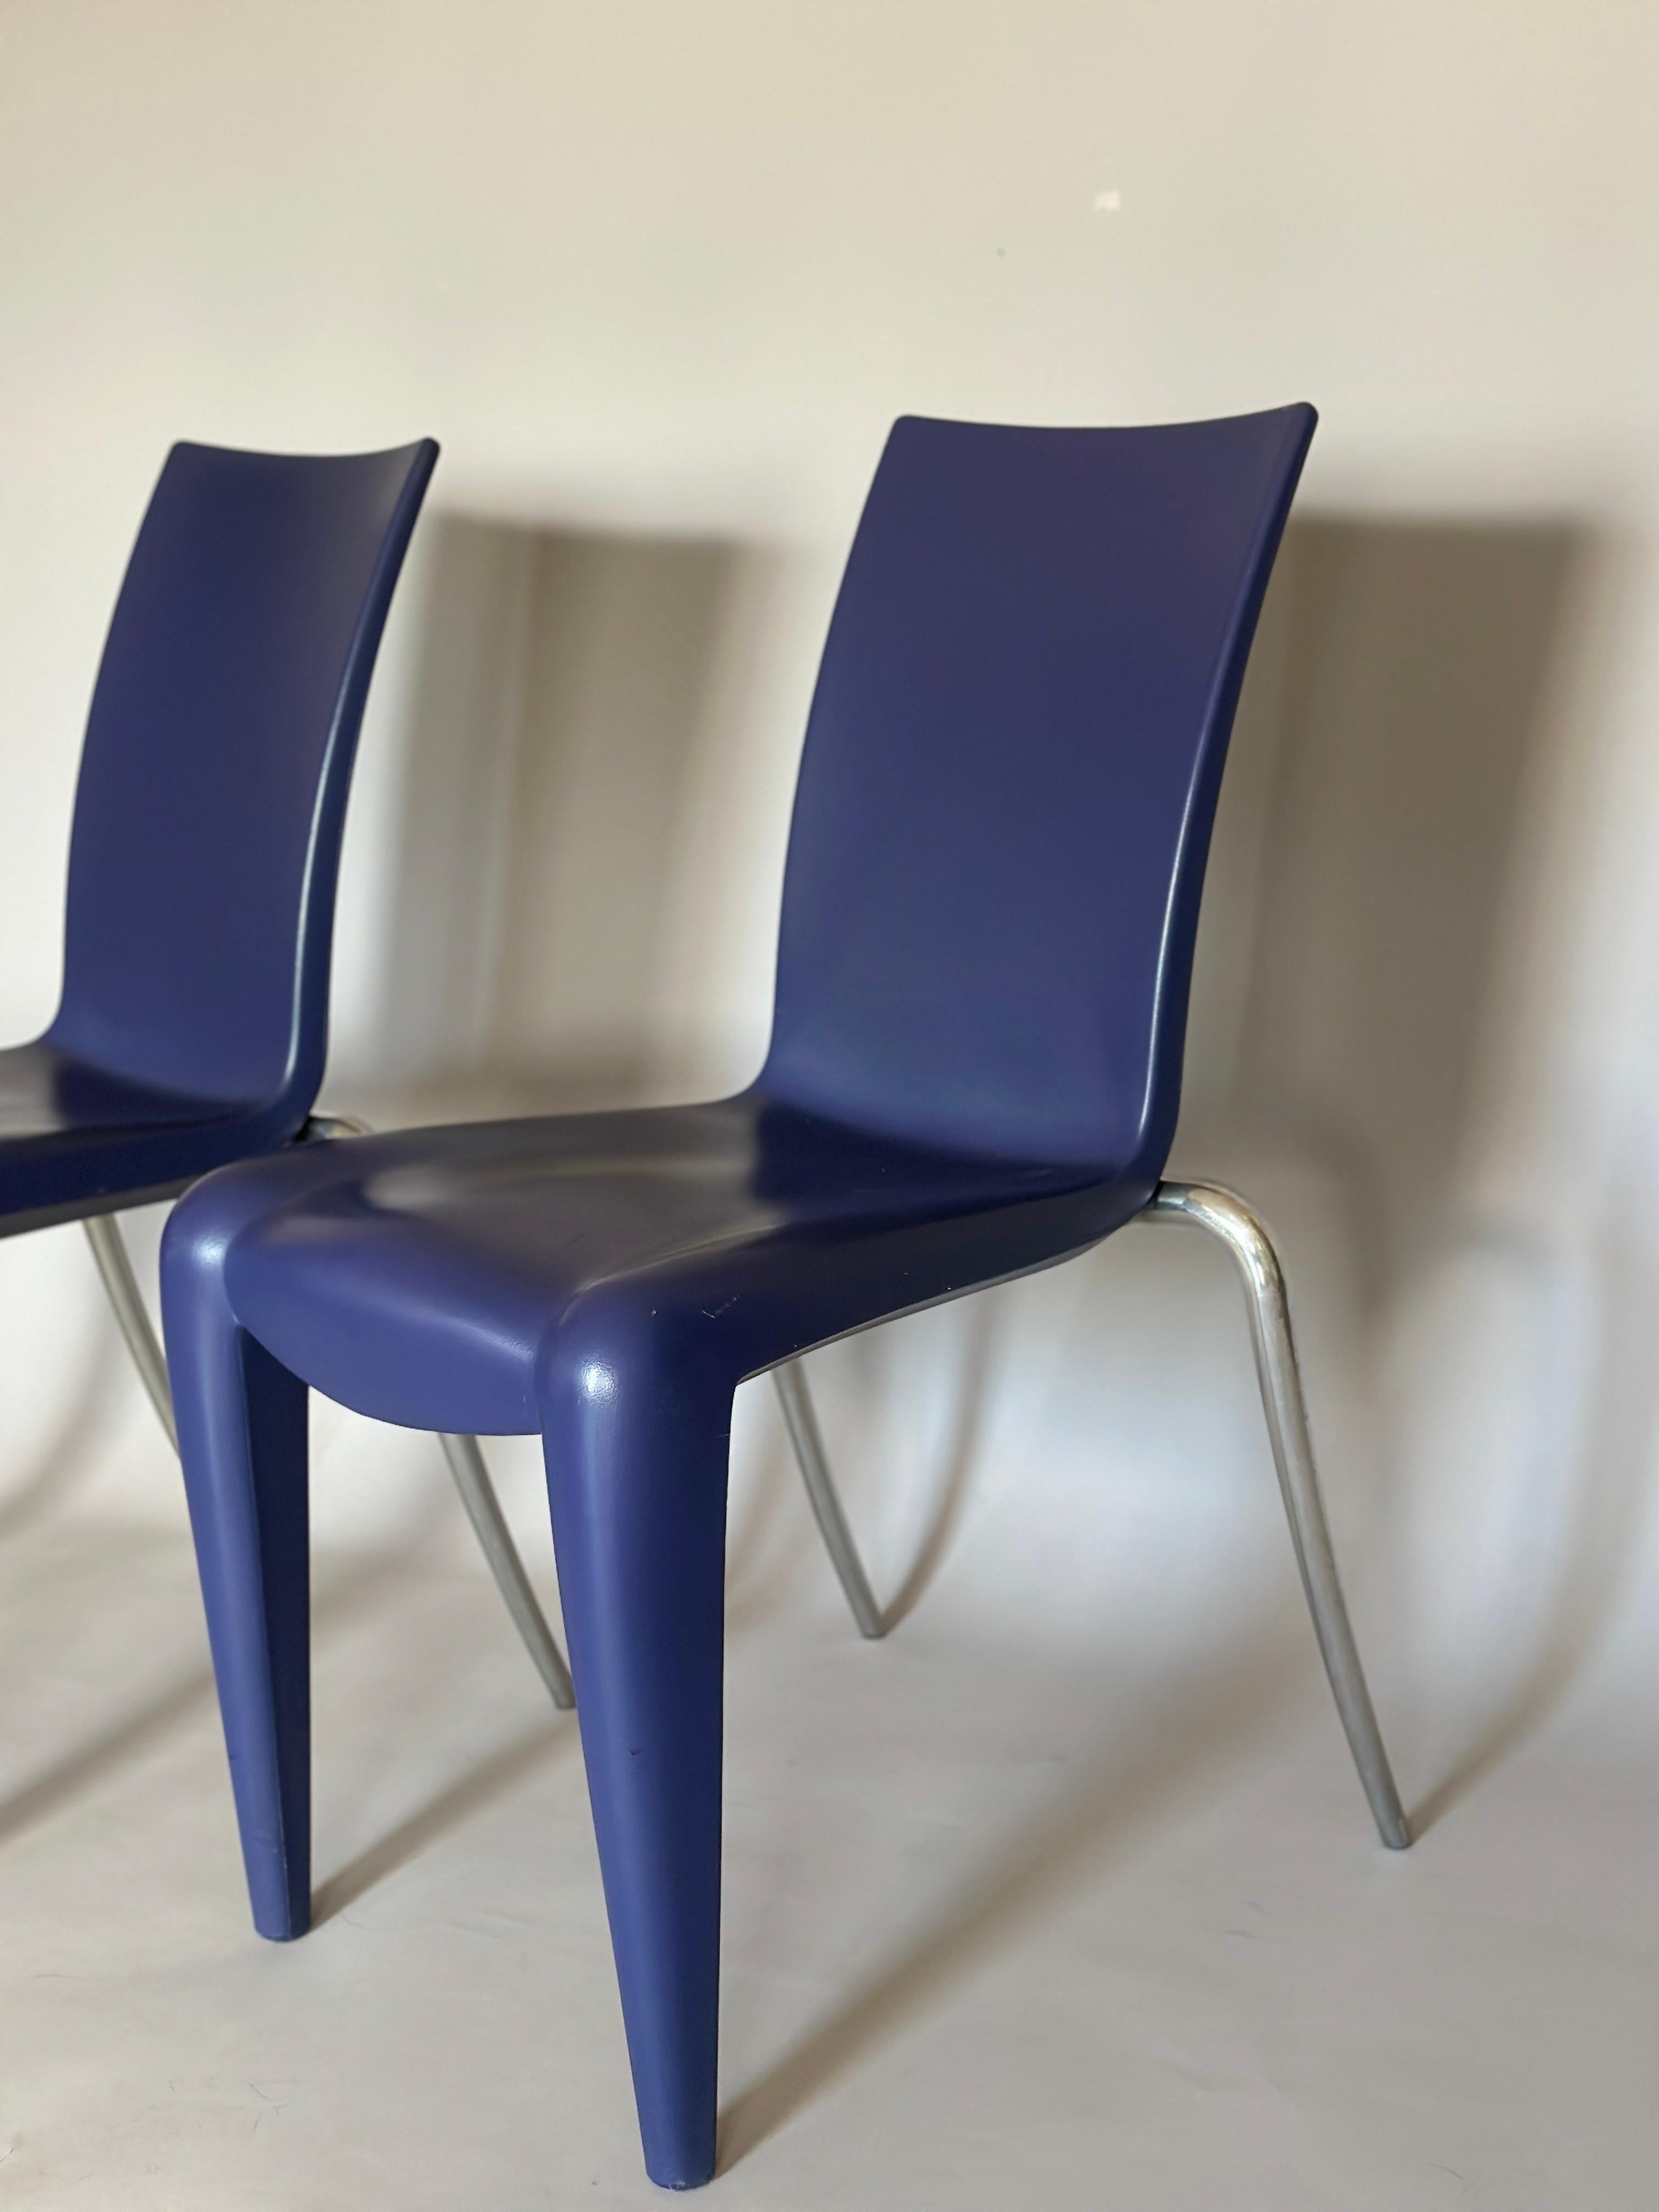 Cette chaise a été conçue par Philippe Starck pour Vitra dans les années 90. Les matériaux utilisés sont le polypropylène soufflé et l'aluminium poli. Usure légère correspondant à l'âge et à l'utilisation.